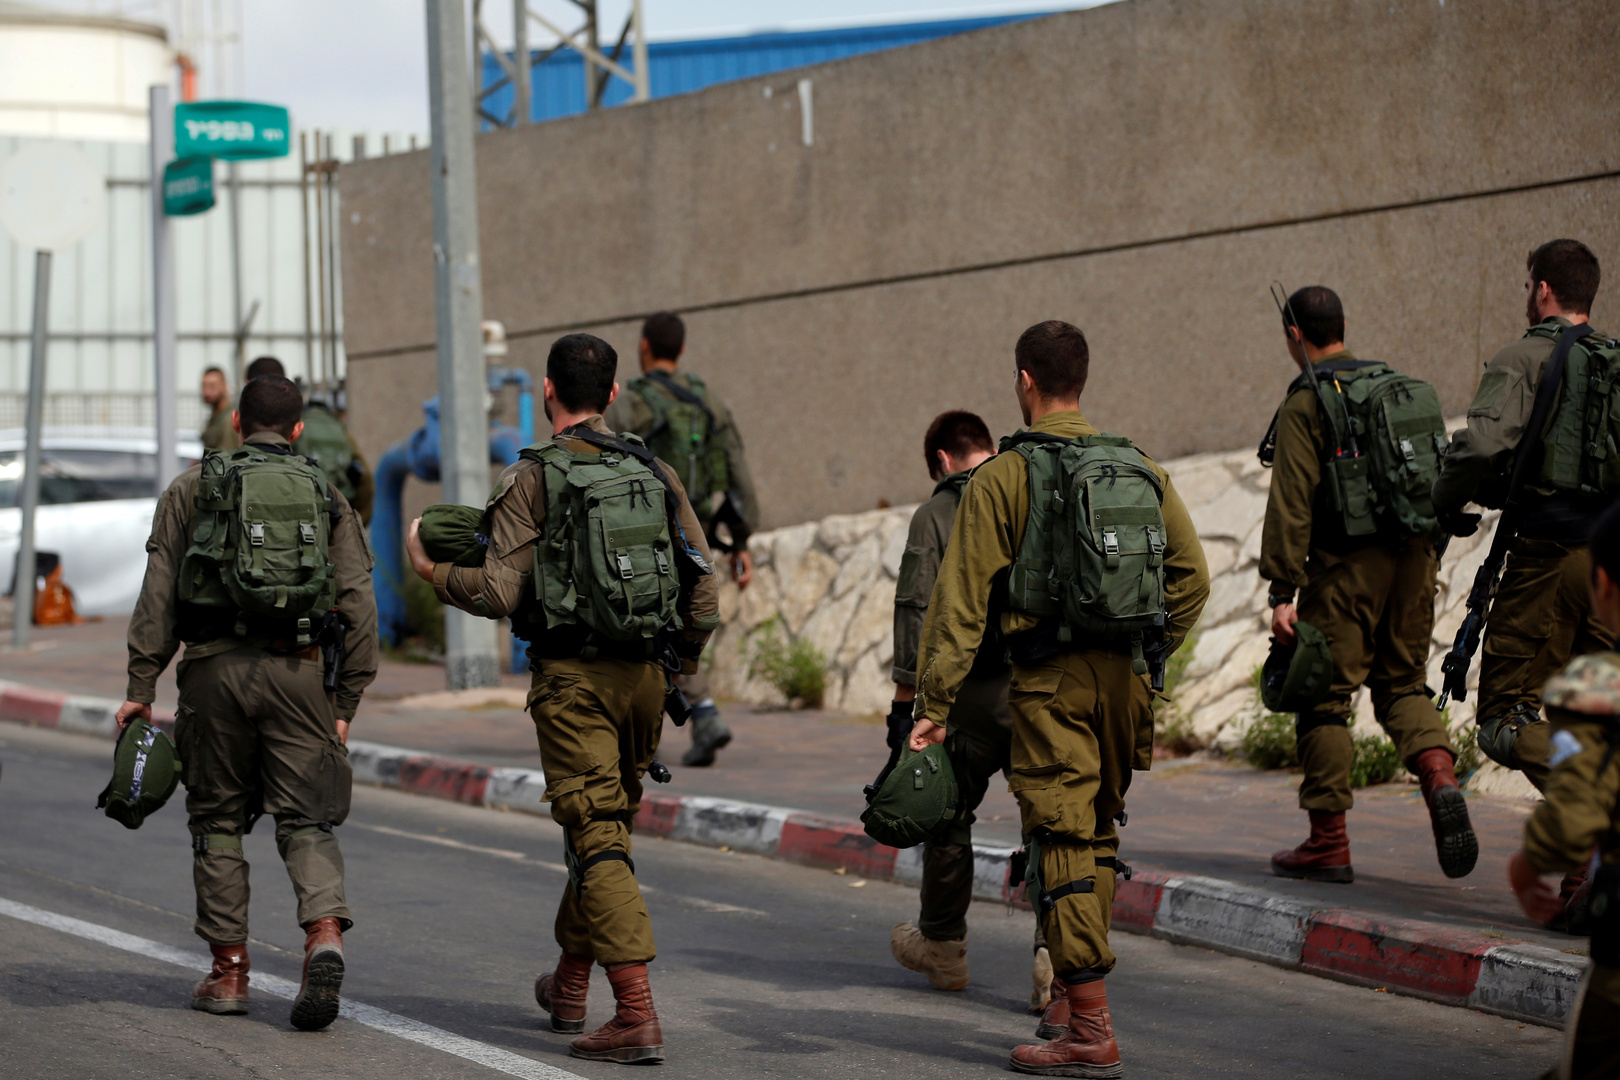 7 إسرائيليين يعتدون على مسن فلسطيني بمسجد في هرتسليا